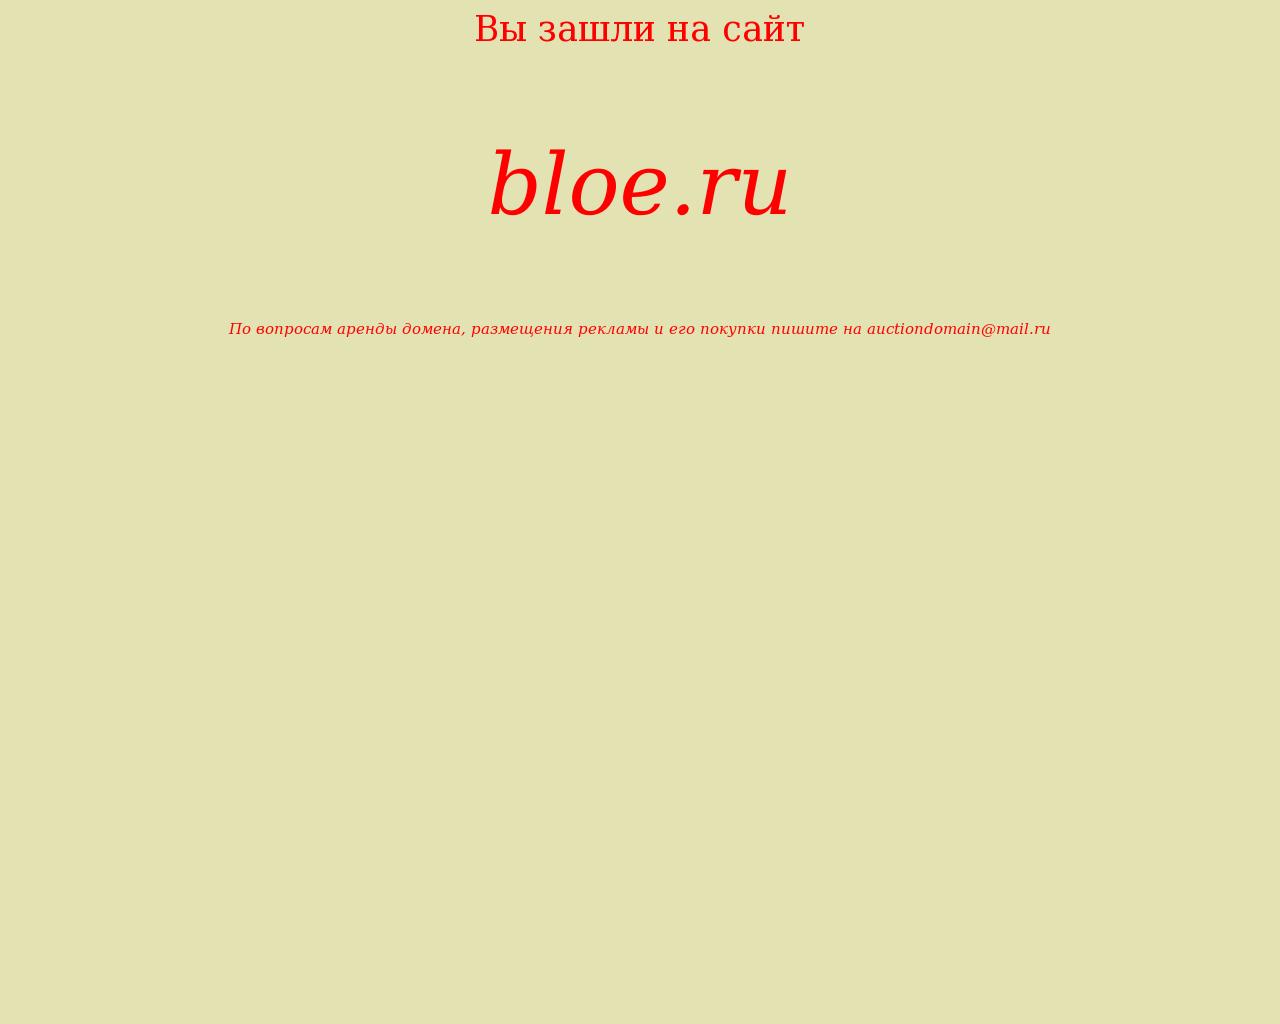 Изображение сайта bloe.ru в разрешении 1280x1024